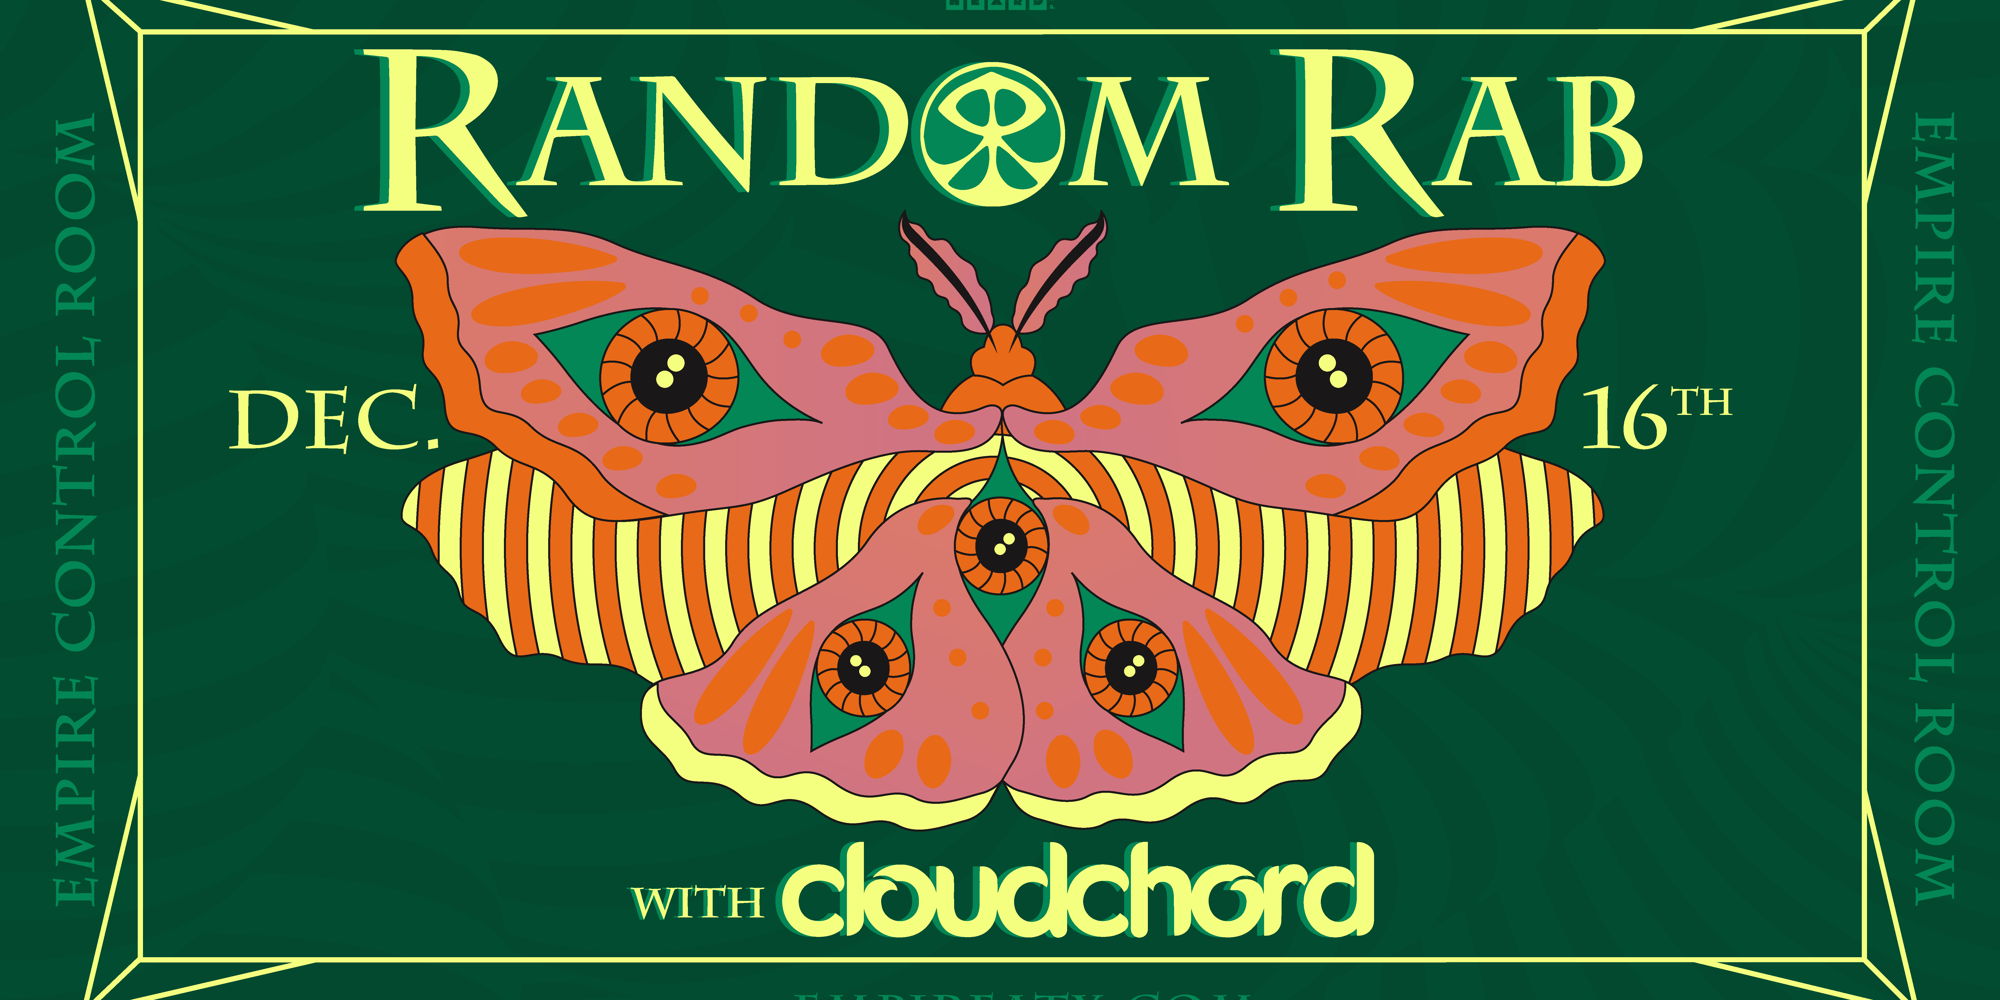 Random Rab w/ Cloudchord at Empire Control Room - Dec. 16 promotional image